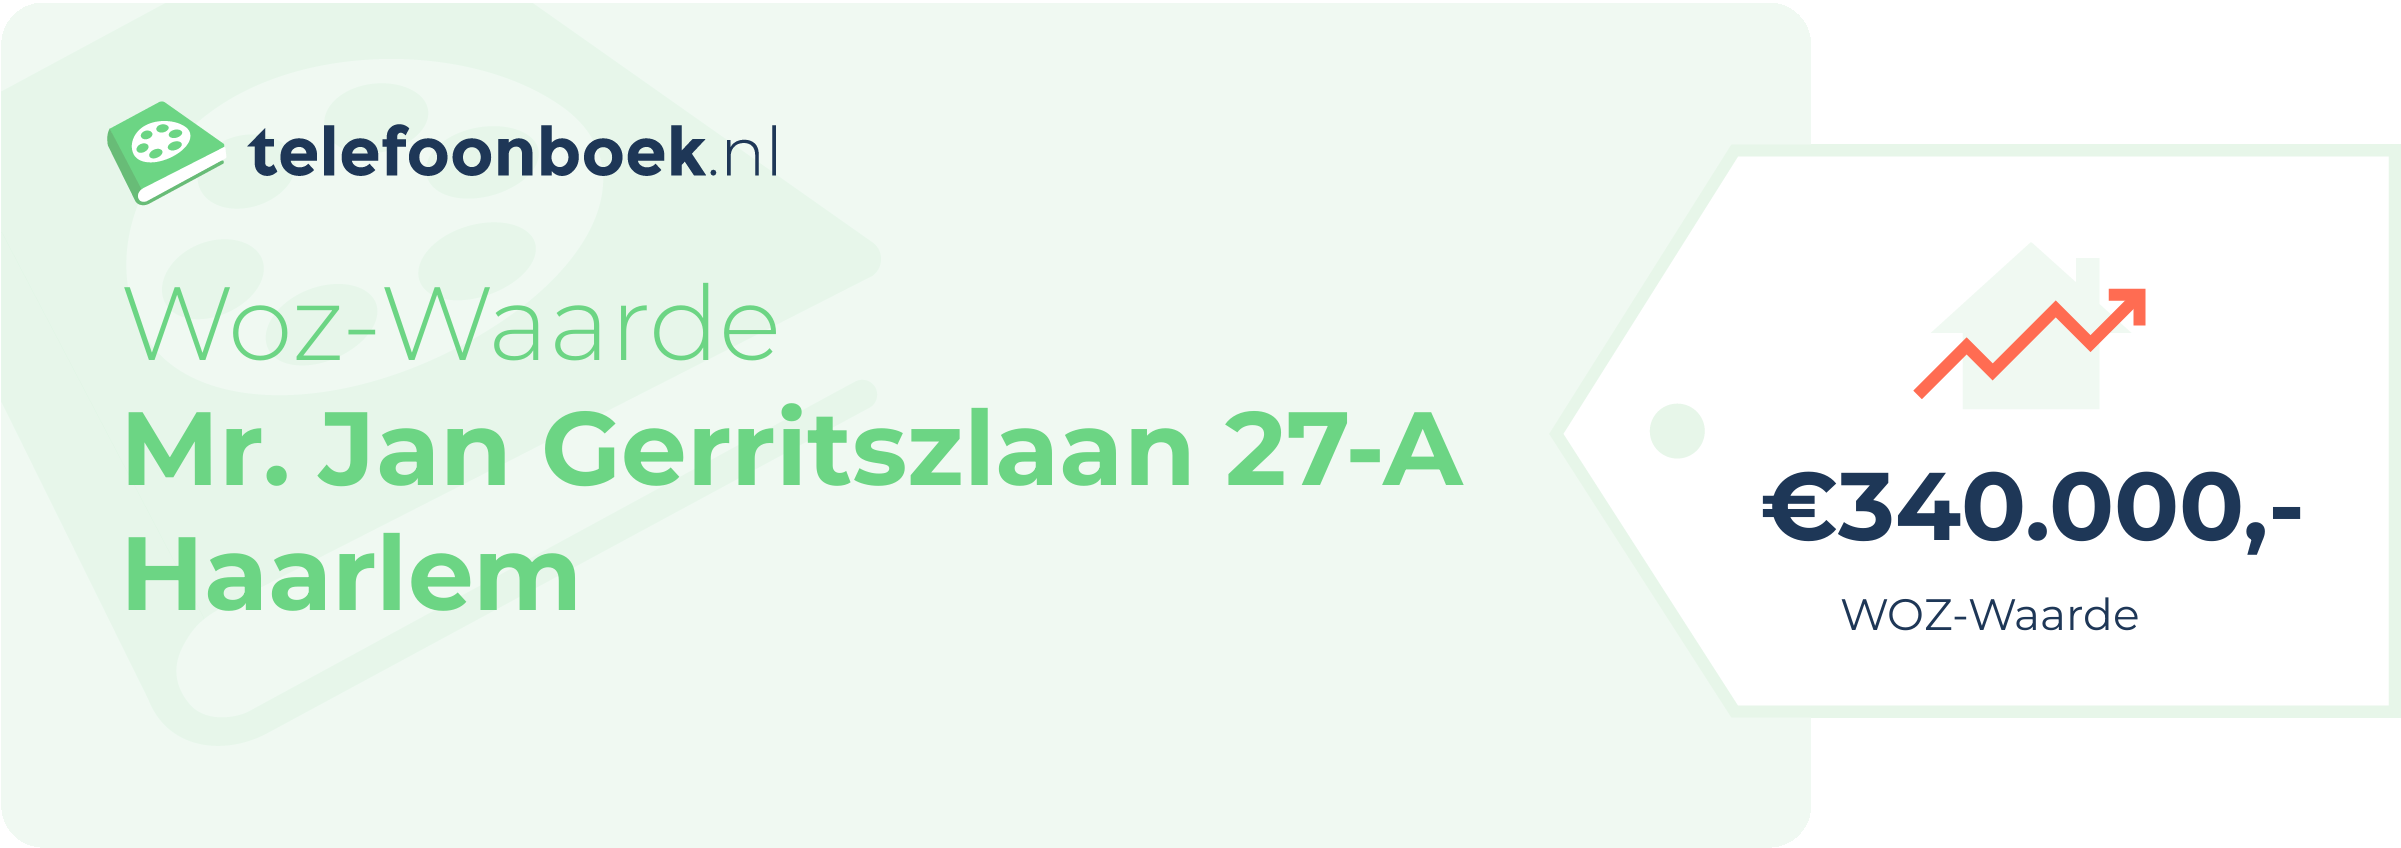 WOZ-waarde Mr. Jan Gerritszlaan 27-A Haarlem